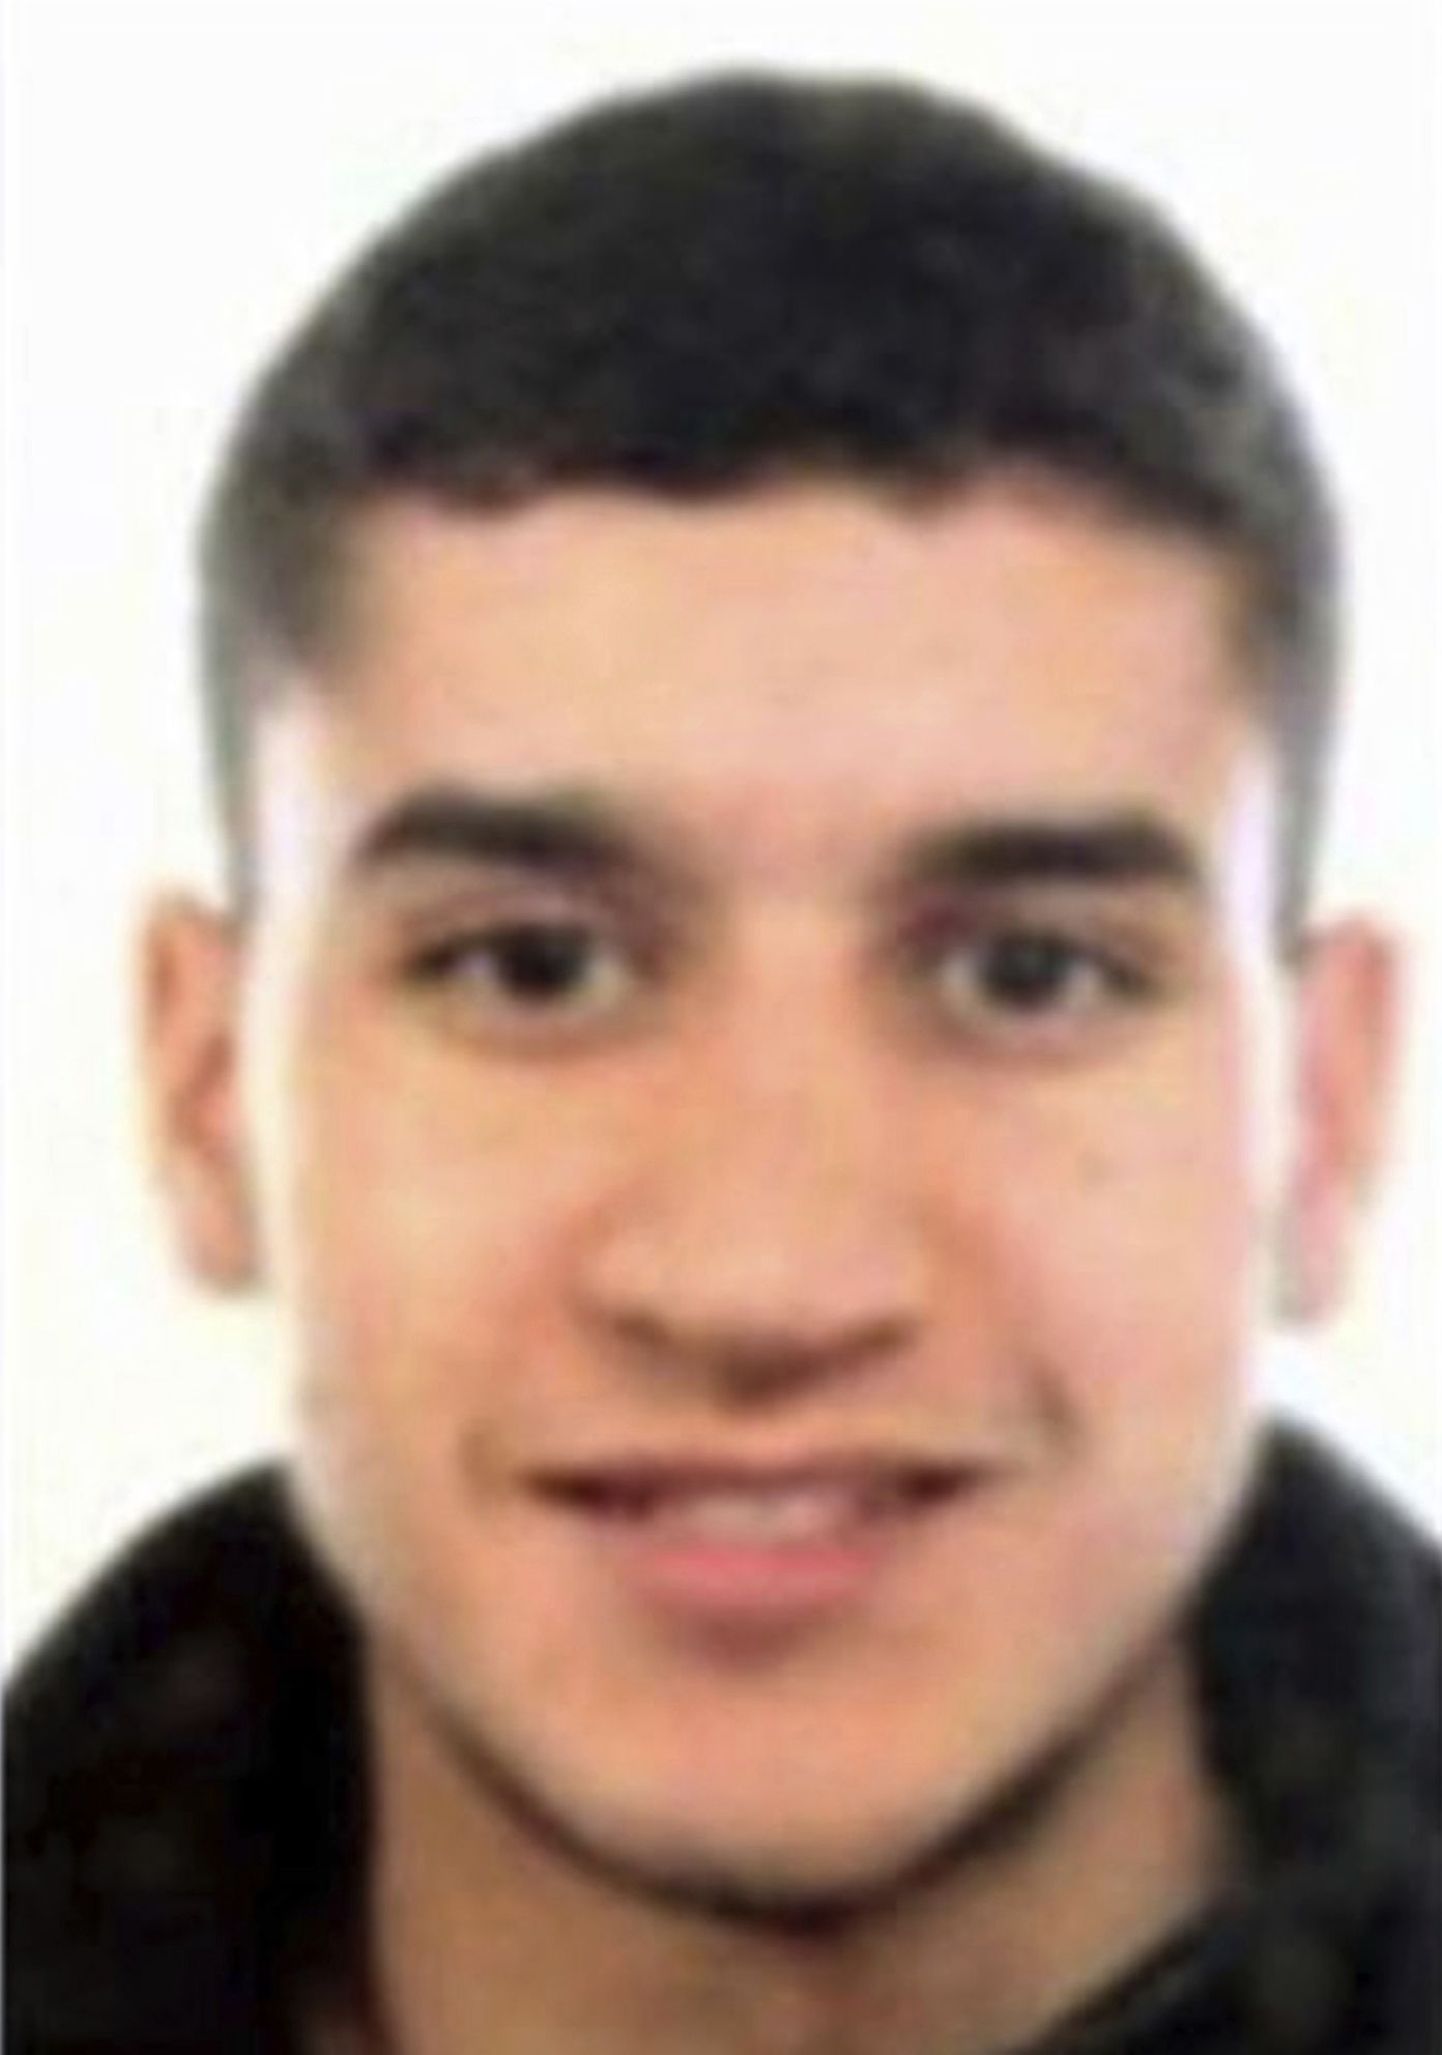 22-aastane marokolane Younes Abouyaaquoub. Politseil on alust arvata, et kahtlusalune võib olla põgenenud üle piiri Prantsusmaale.